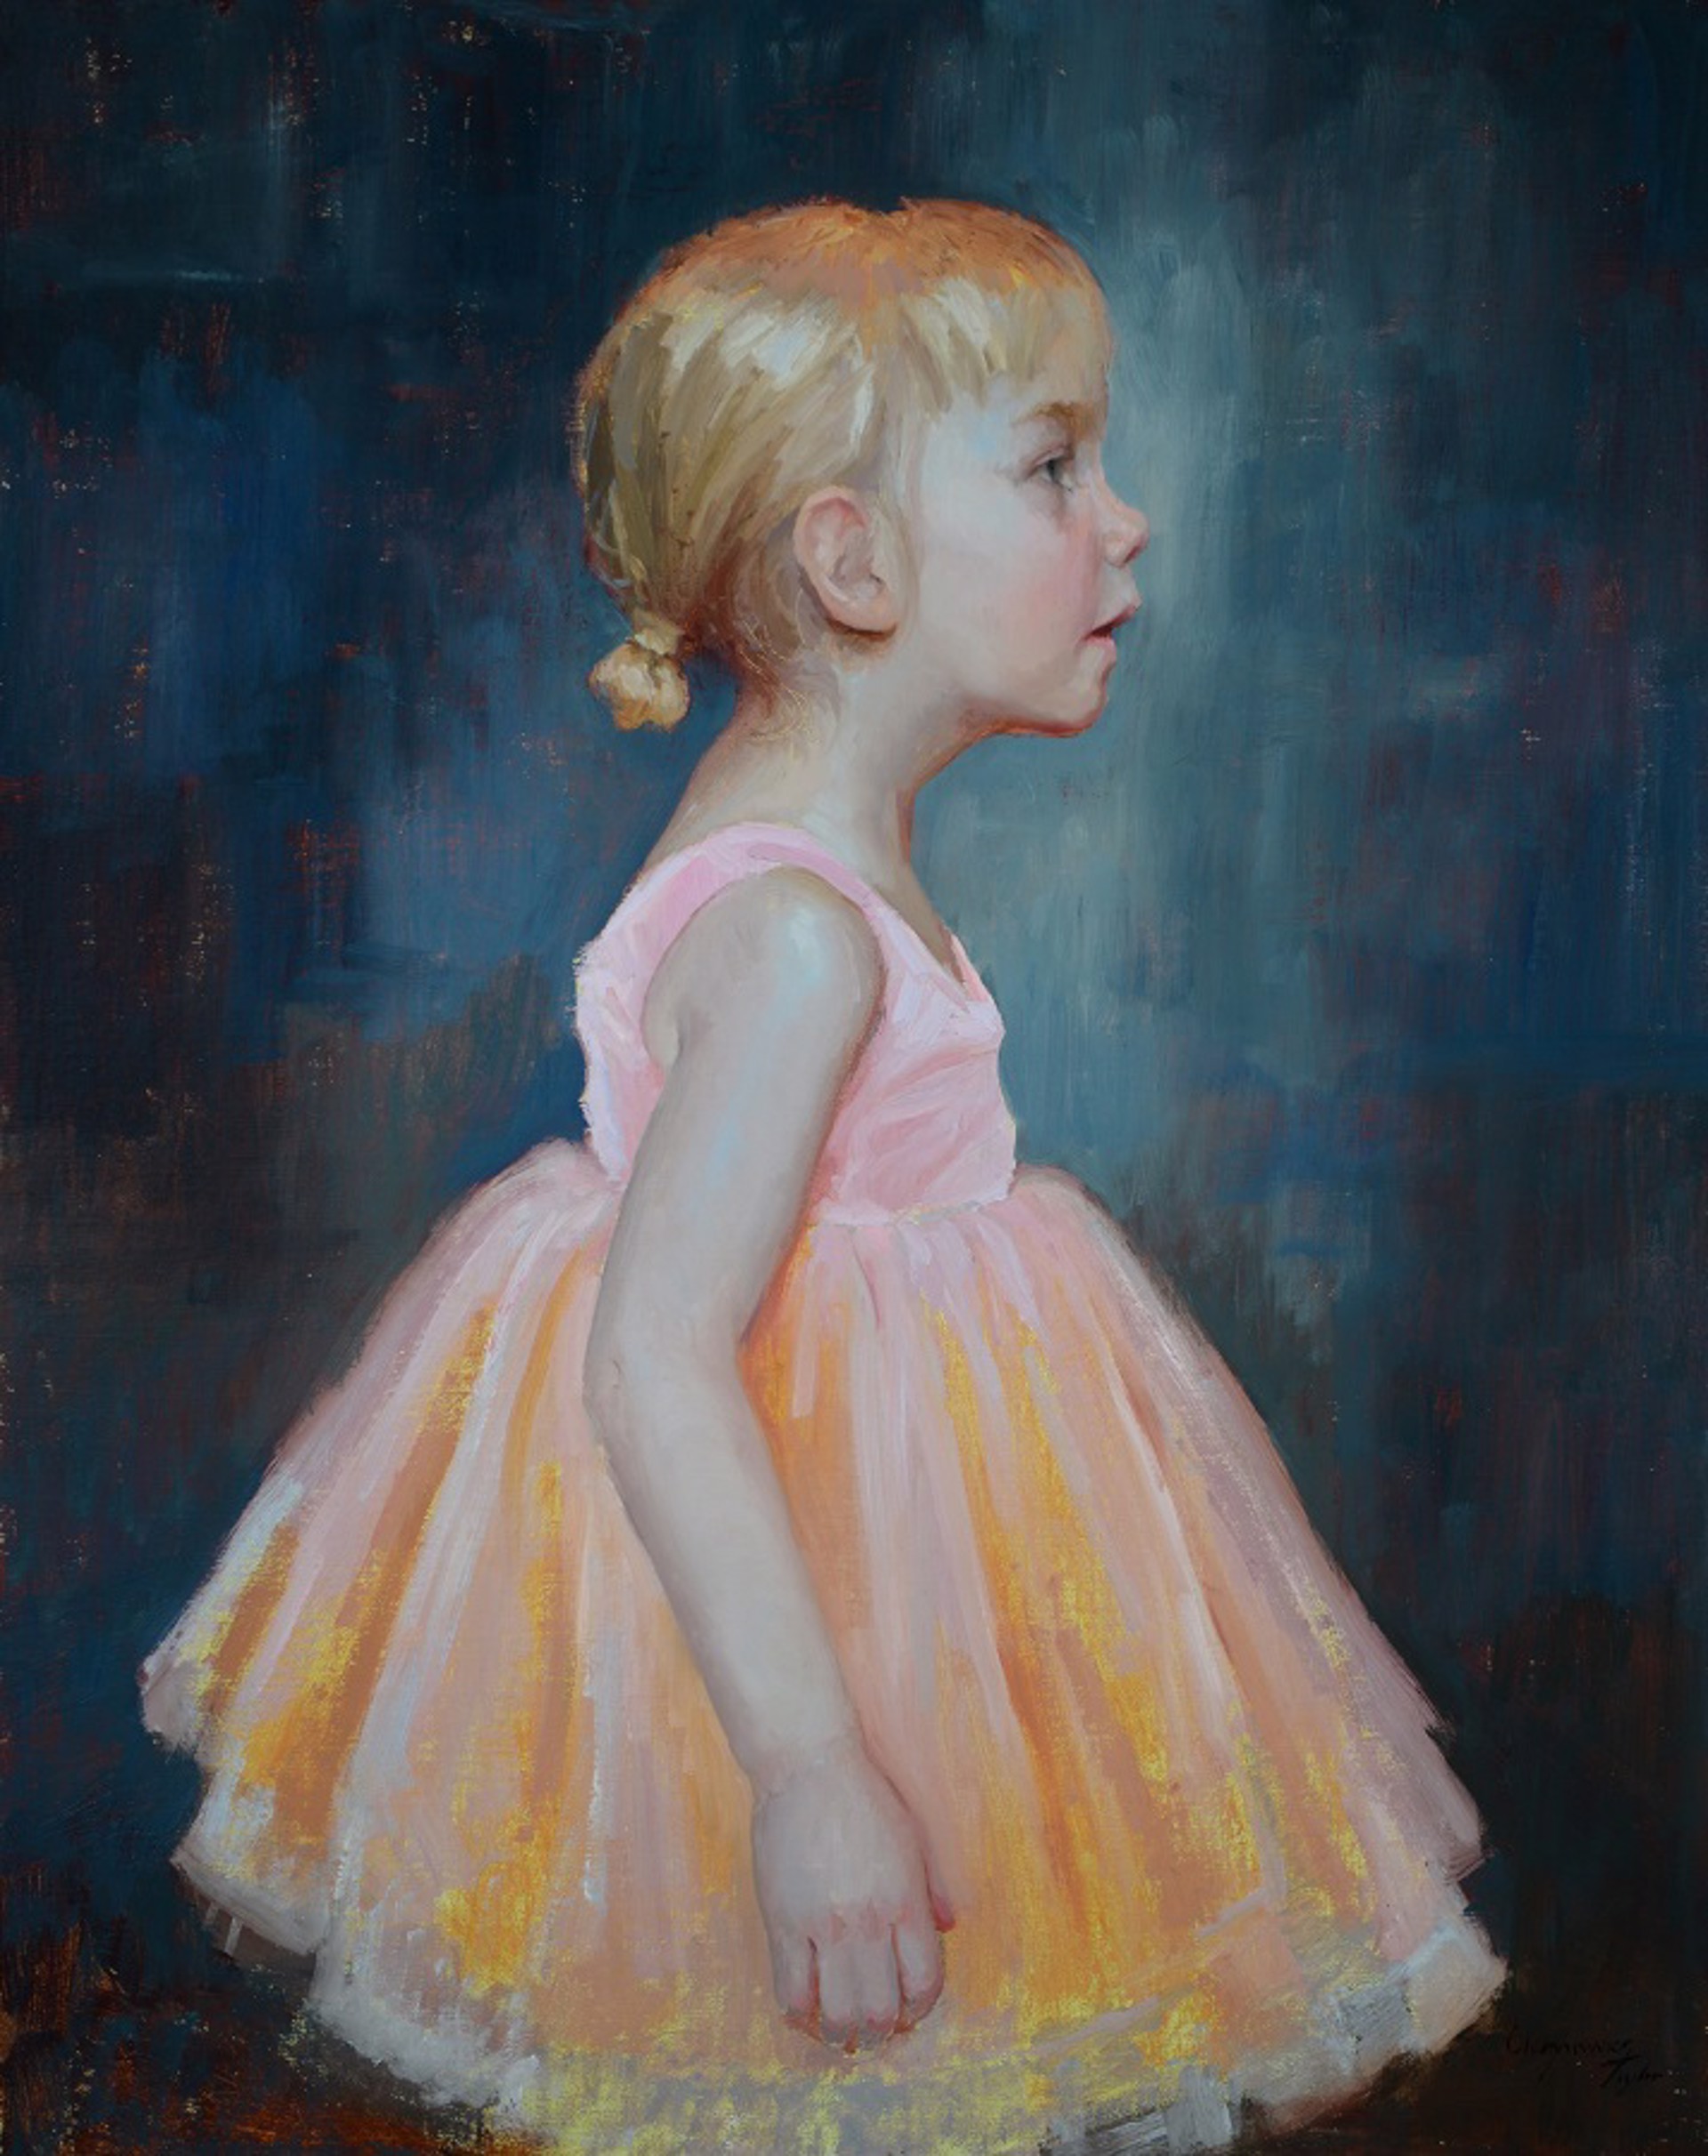 Tiny Dancer by Marci Oleszkiewicz